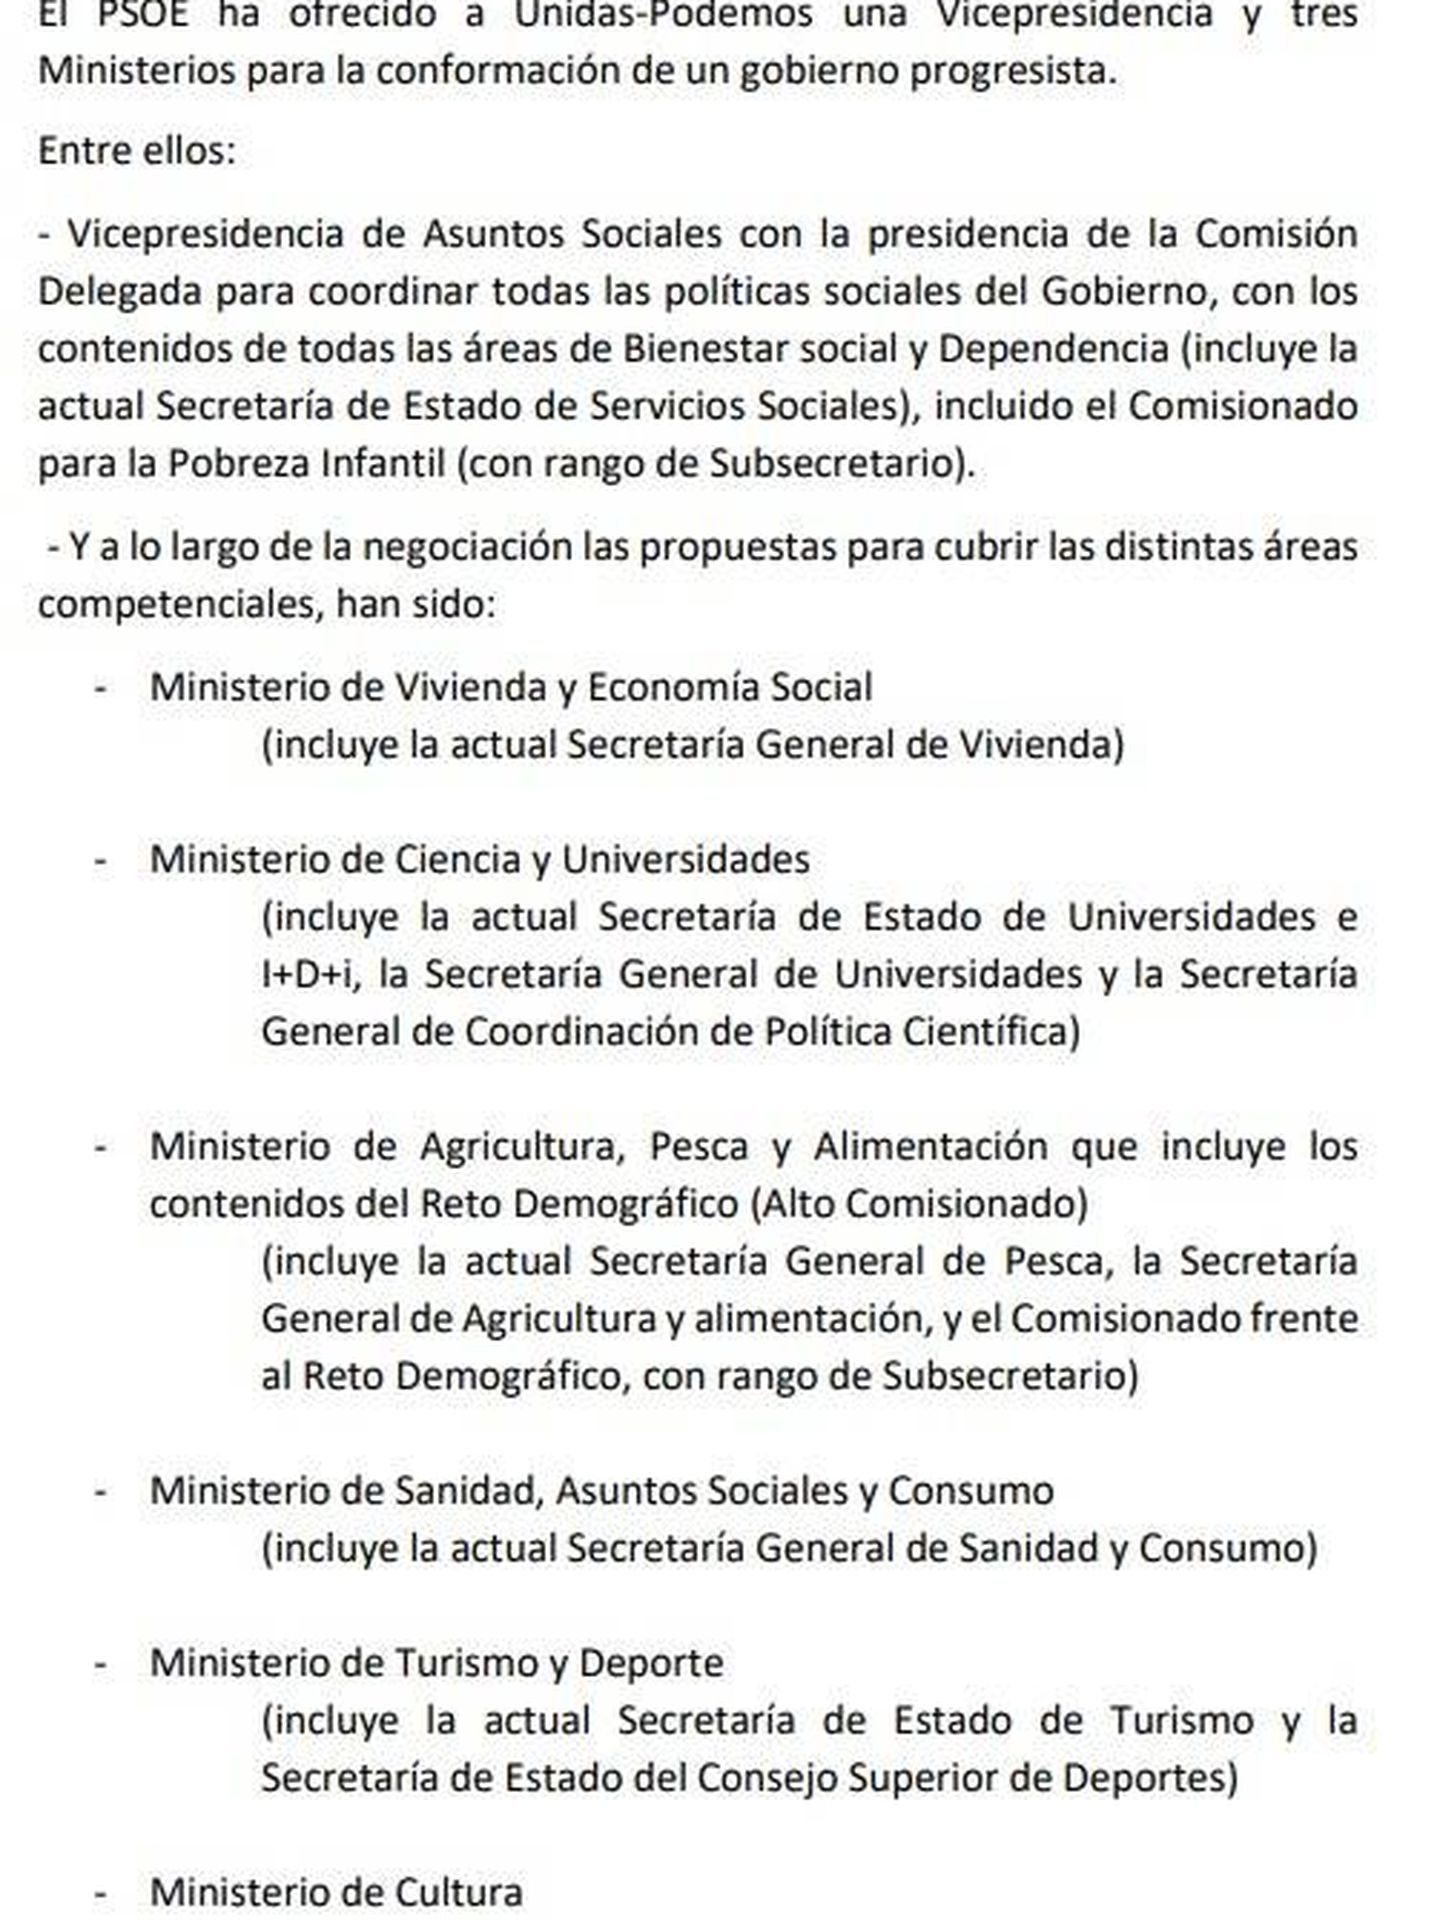 Consulte aquí en PDF las ofertas de reparto de ministerios del PSOE a Unidas Podemos, según Ferraz. 